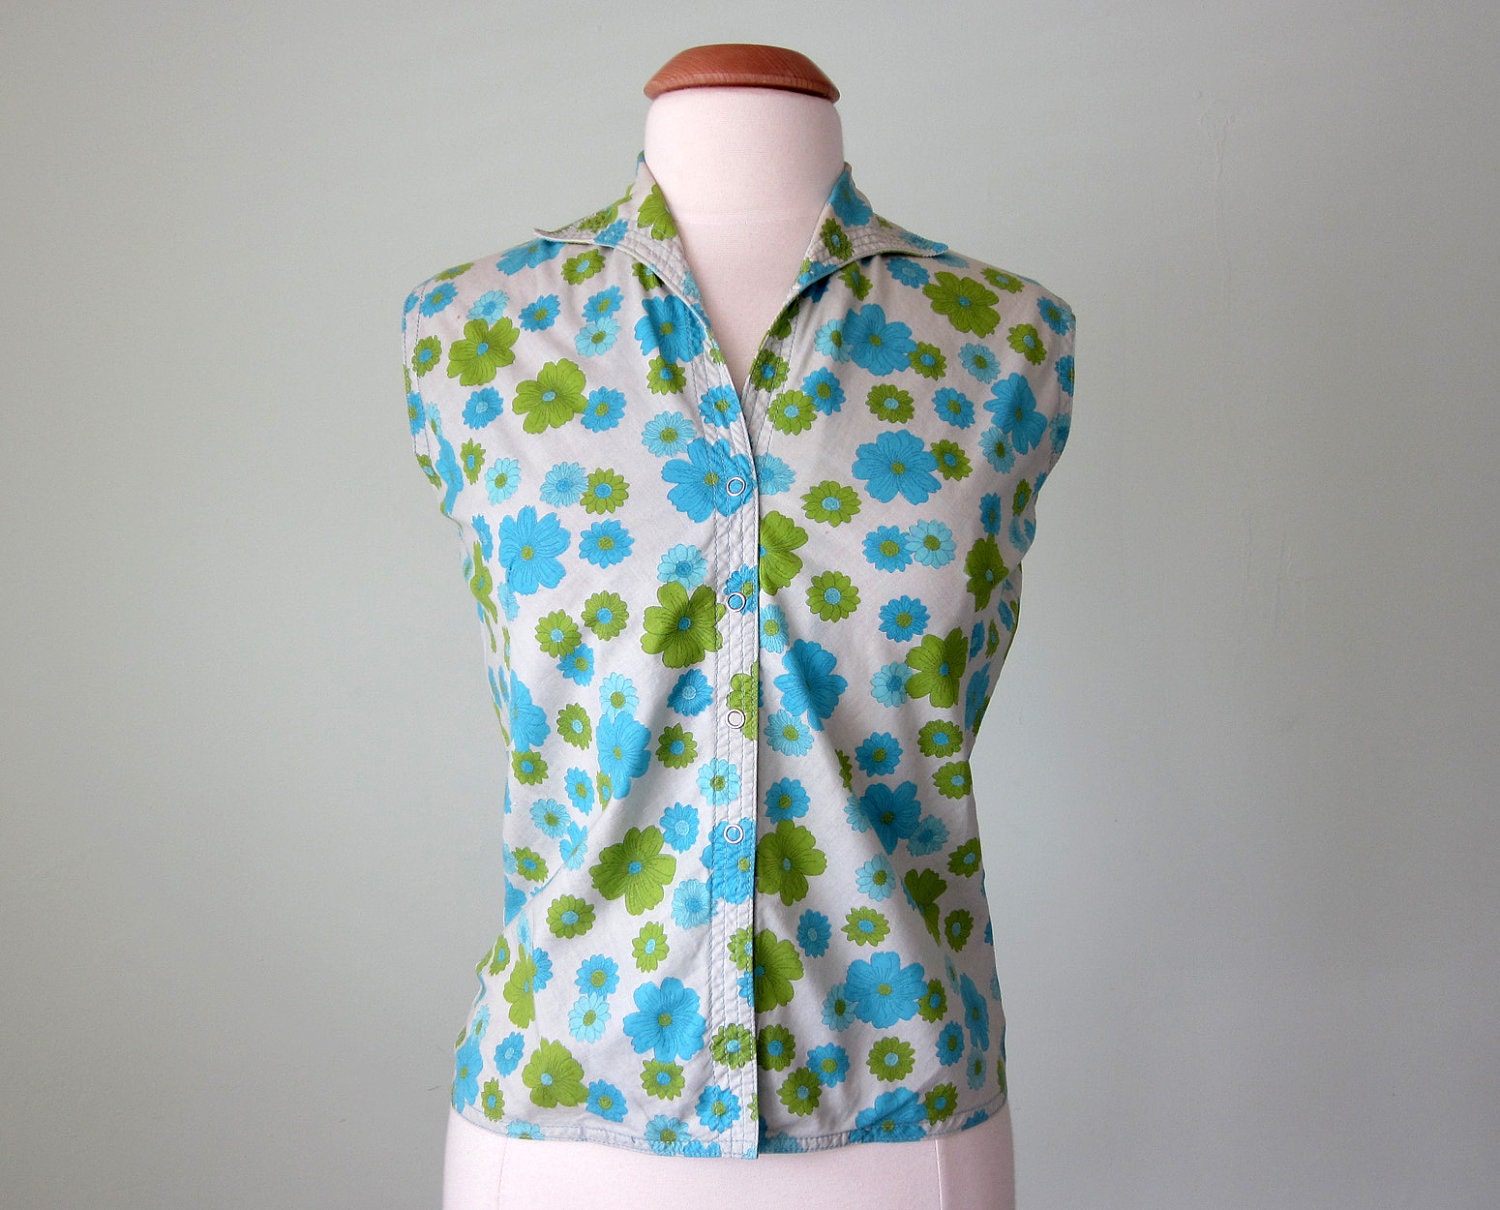 60s blouse / floral print cotton shirt top s m